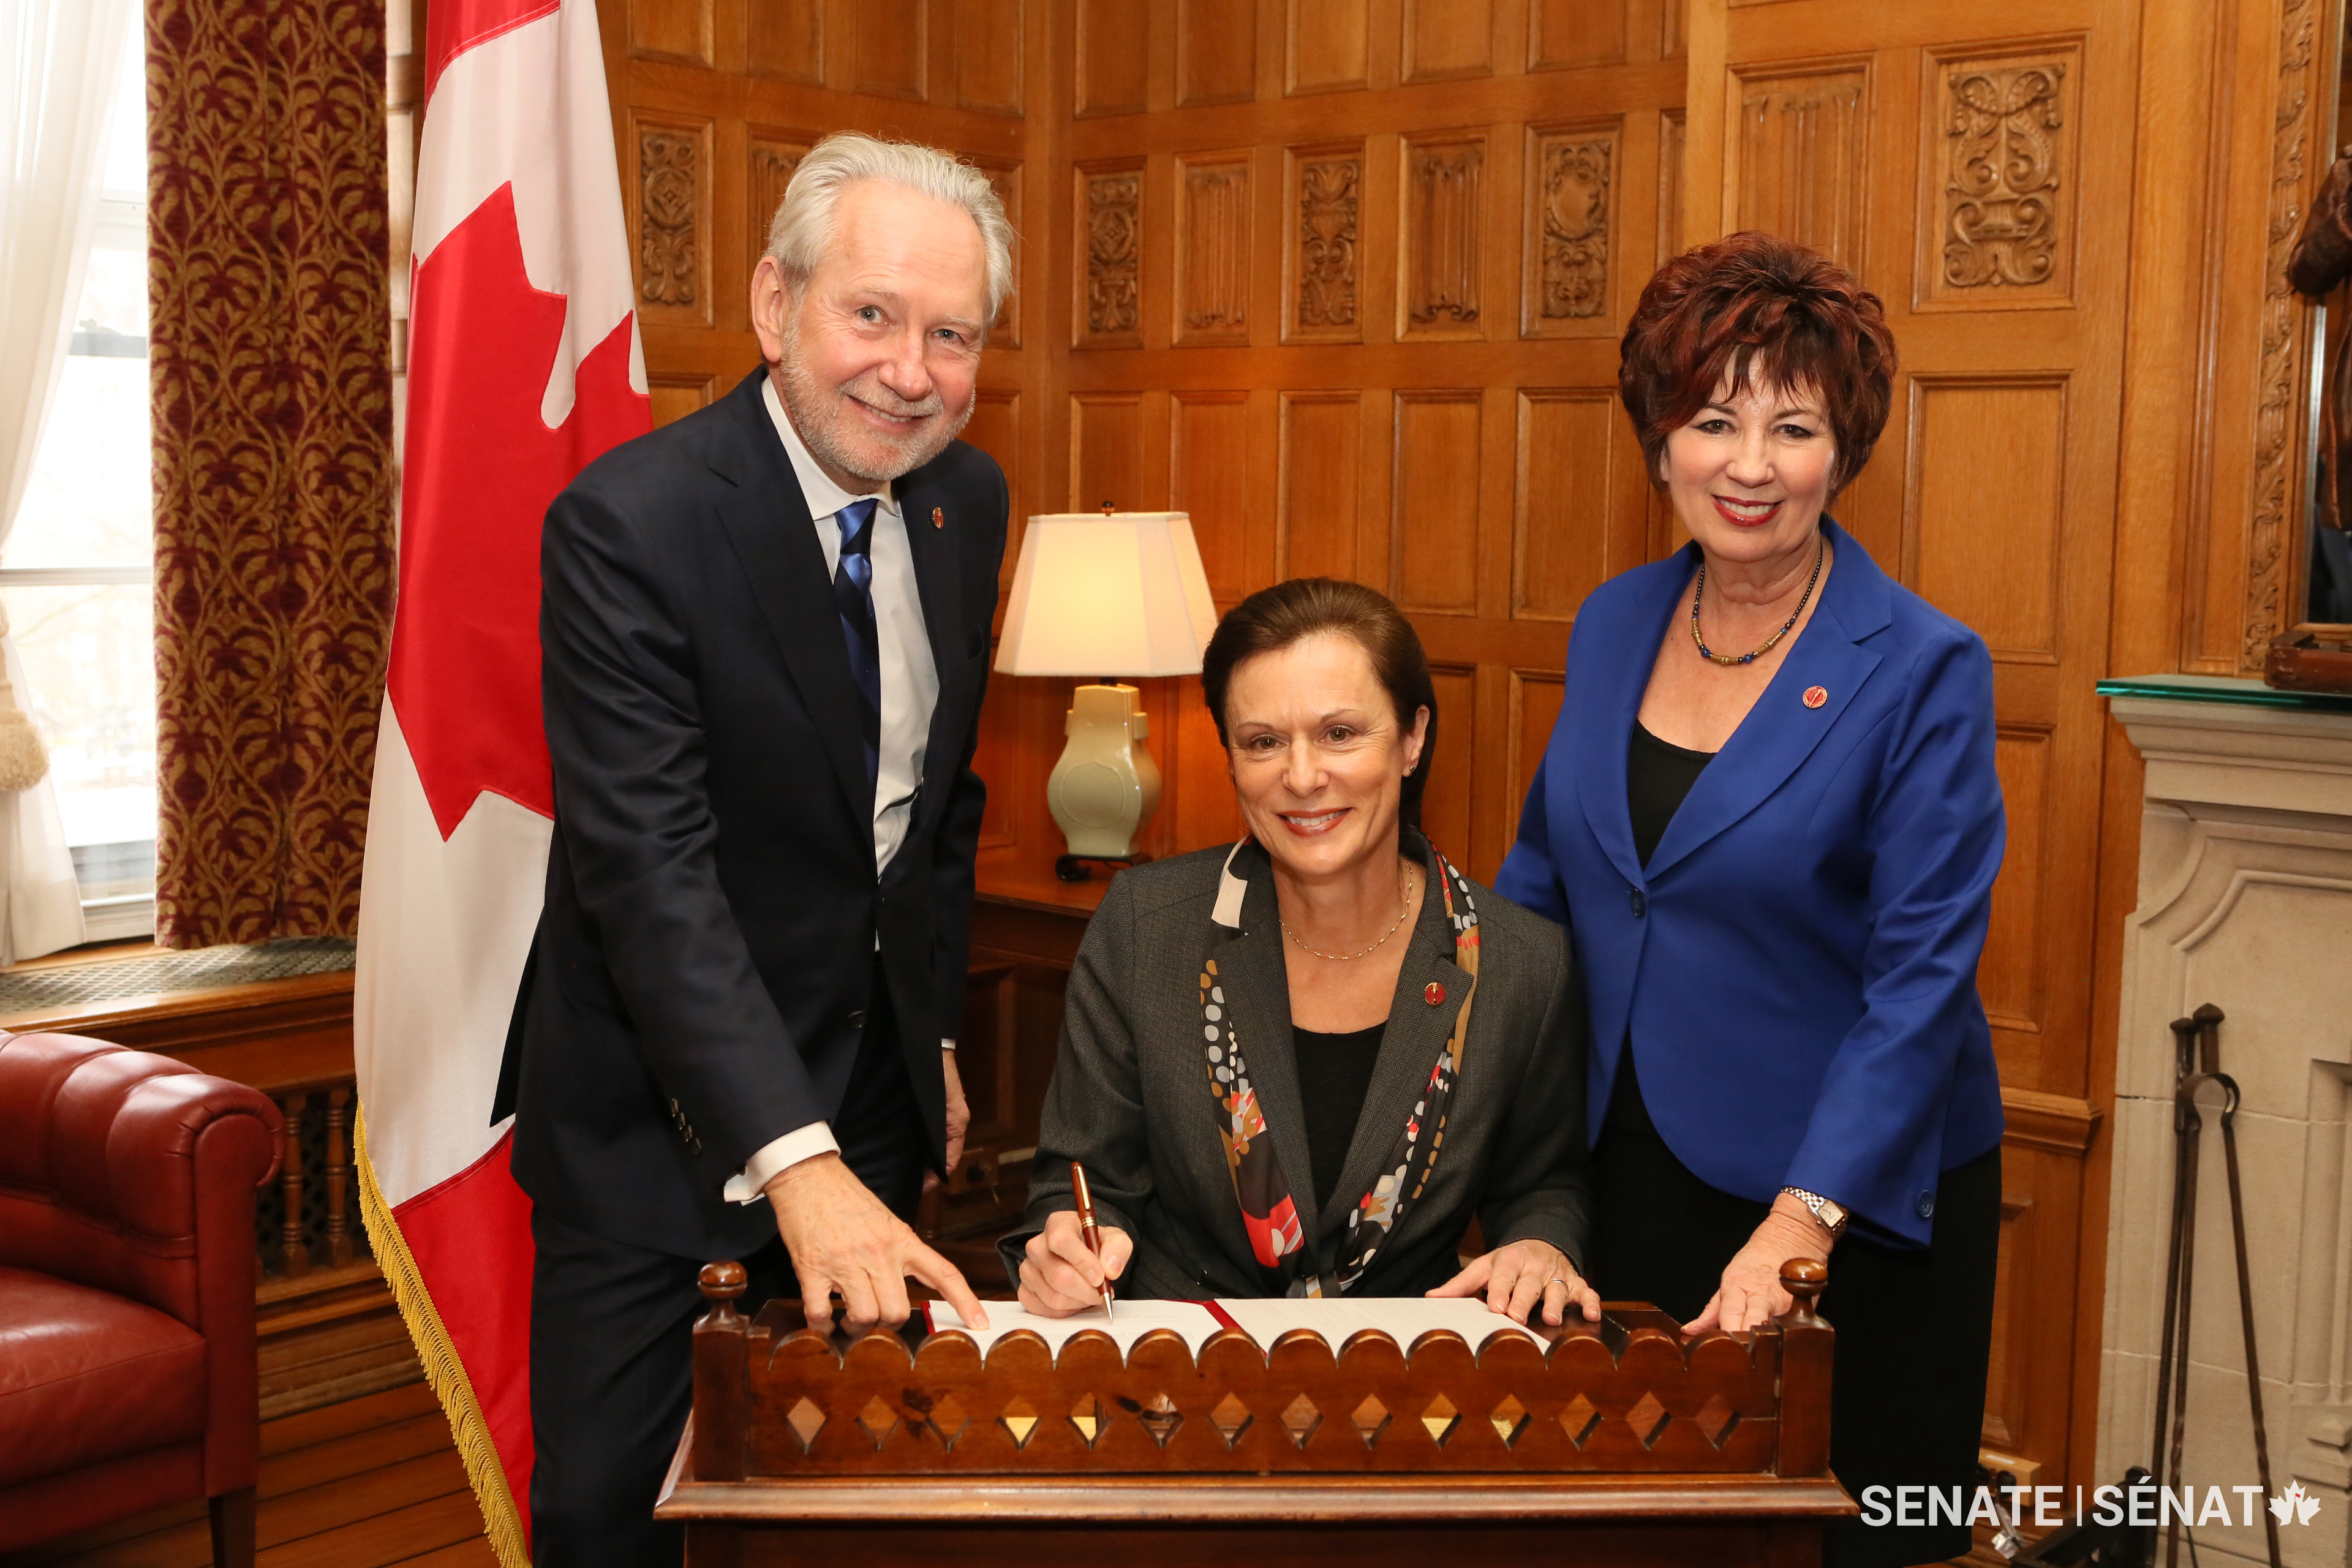 La senatrice Lucie Moncion pose avec le sénateur Peter Harder et la sénatrice Claudette Tardif.